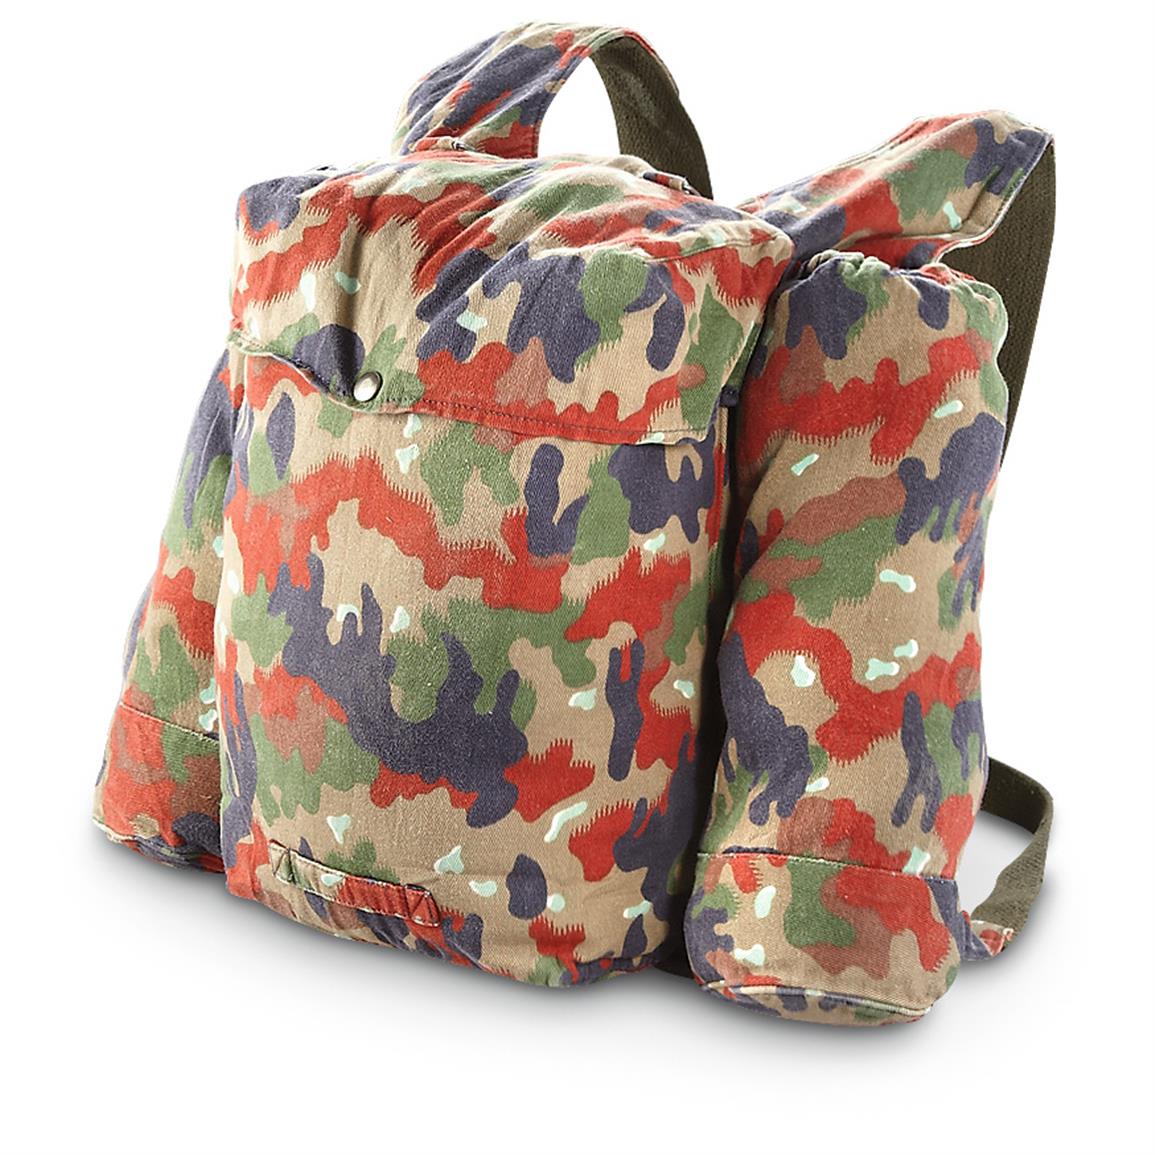 Swiss Military Surplus M70 Backpacks, 2 Pack, Used - 590485, Rucksacks & Backpacks at Sportsman ...